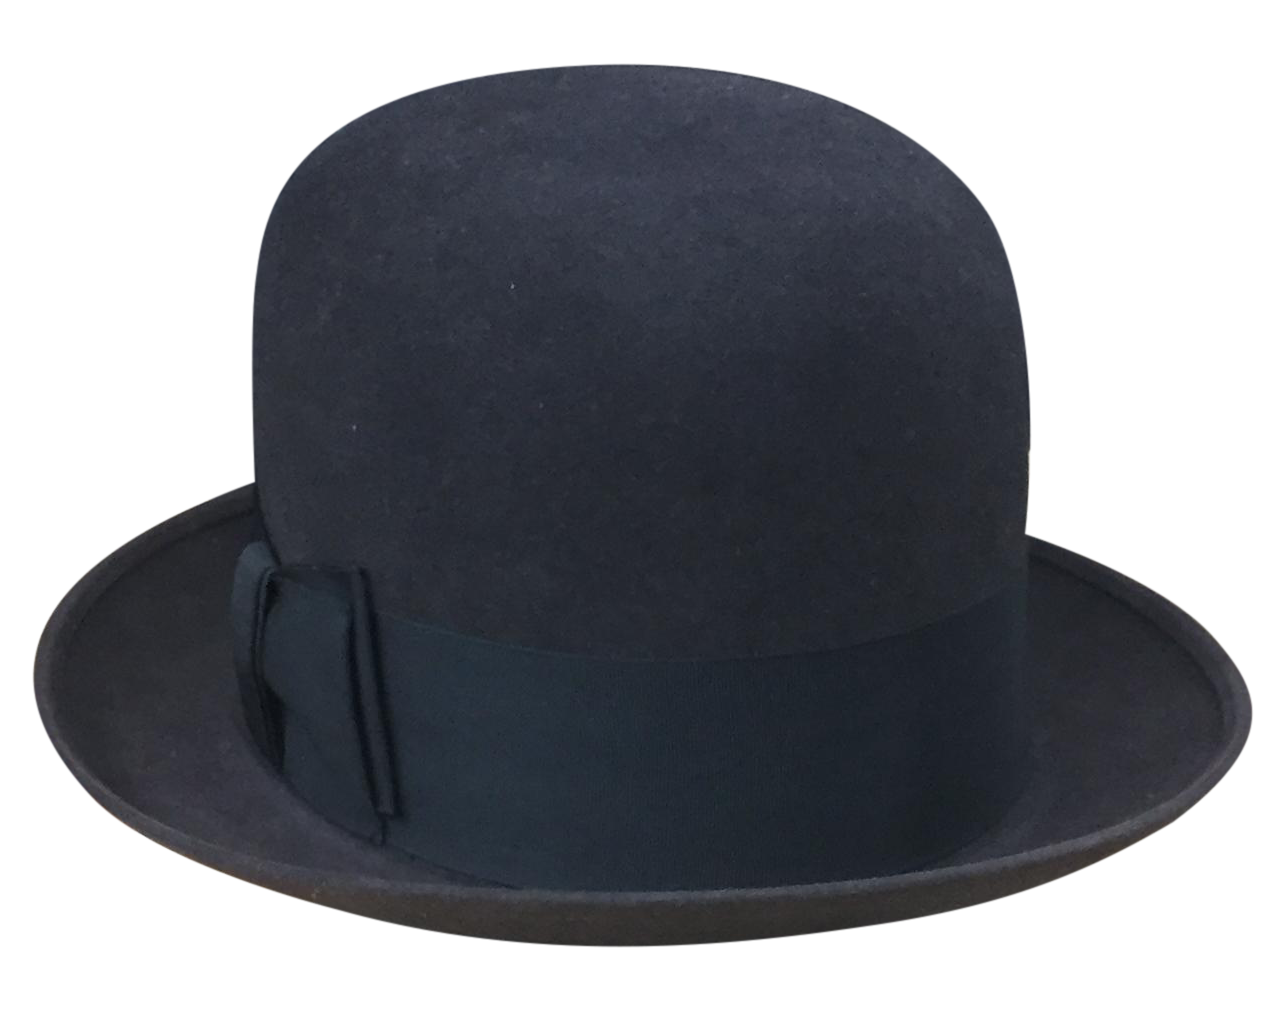 Bowler Hat Photo Transparent Images